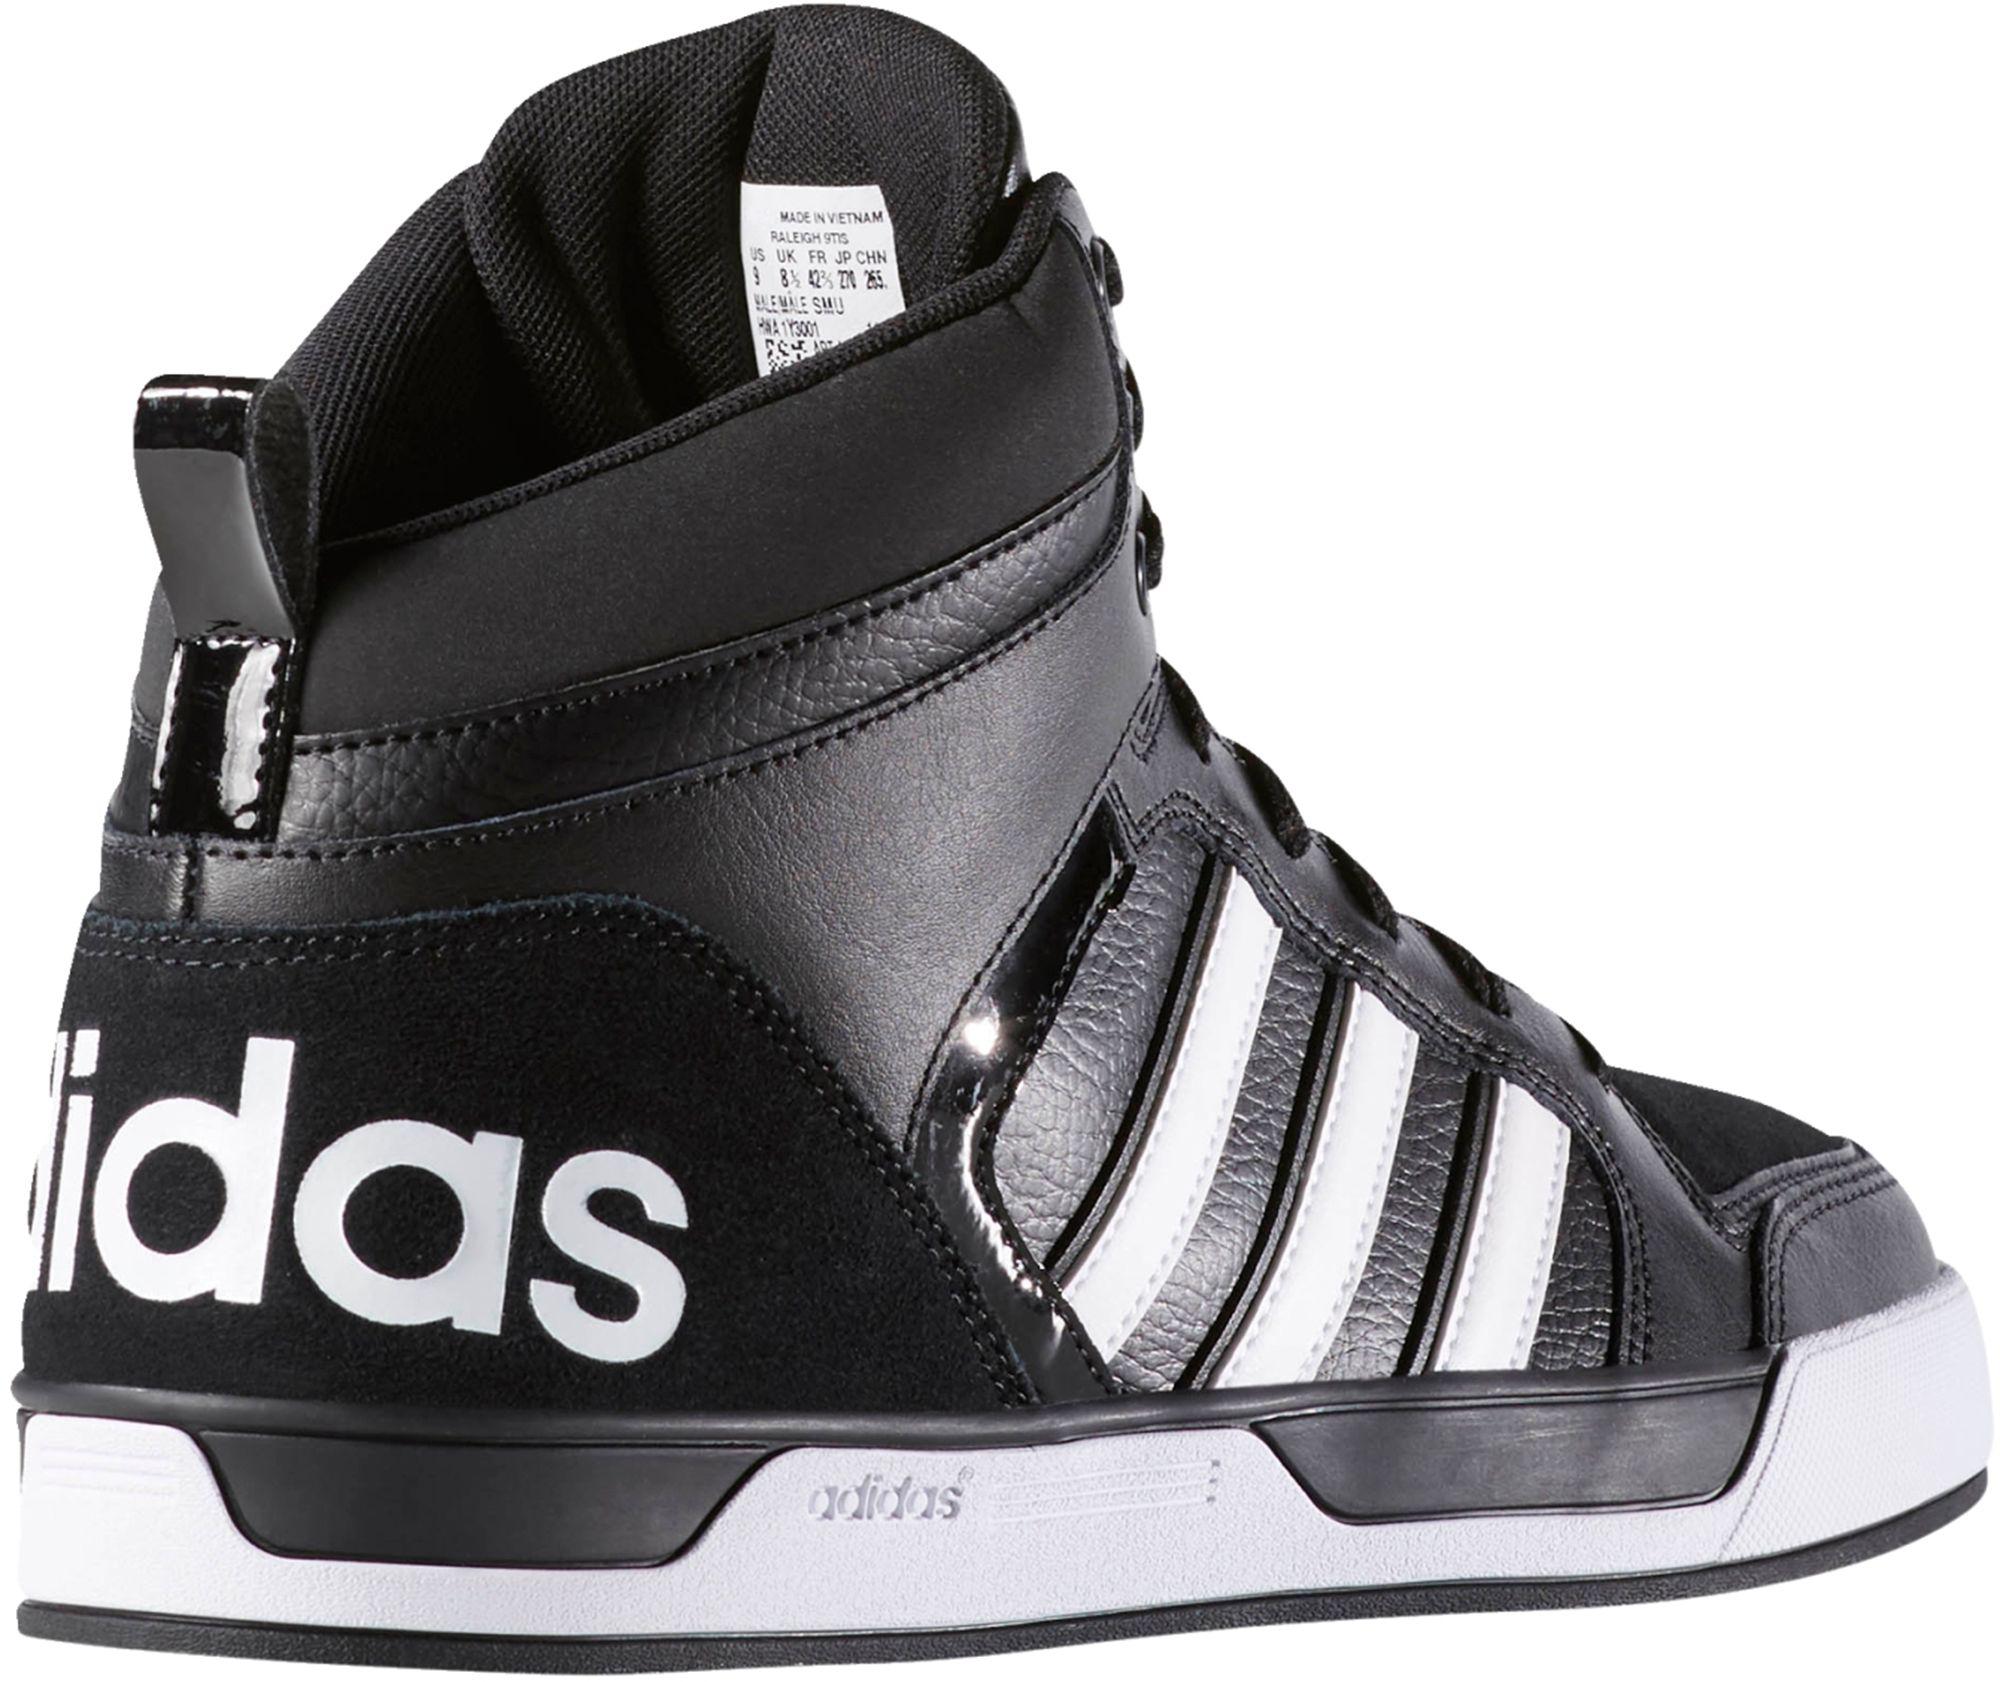 adidas men's neo raleigh 9tis high top sneaker